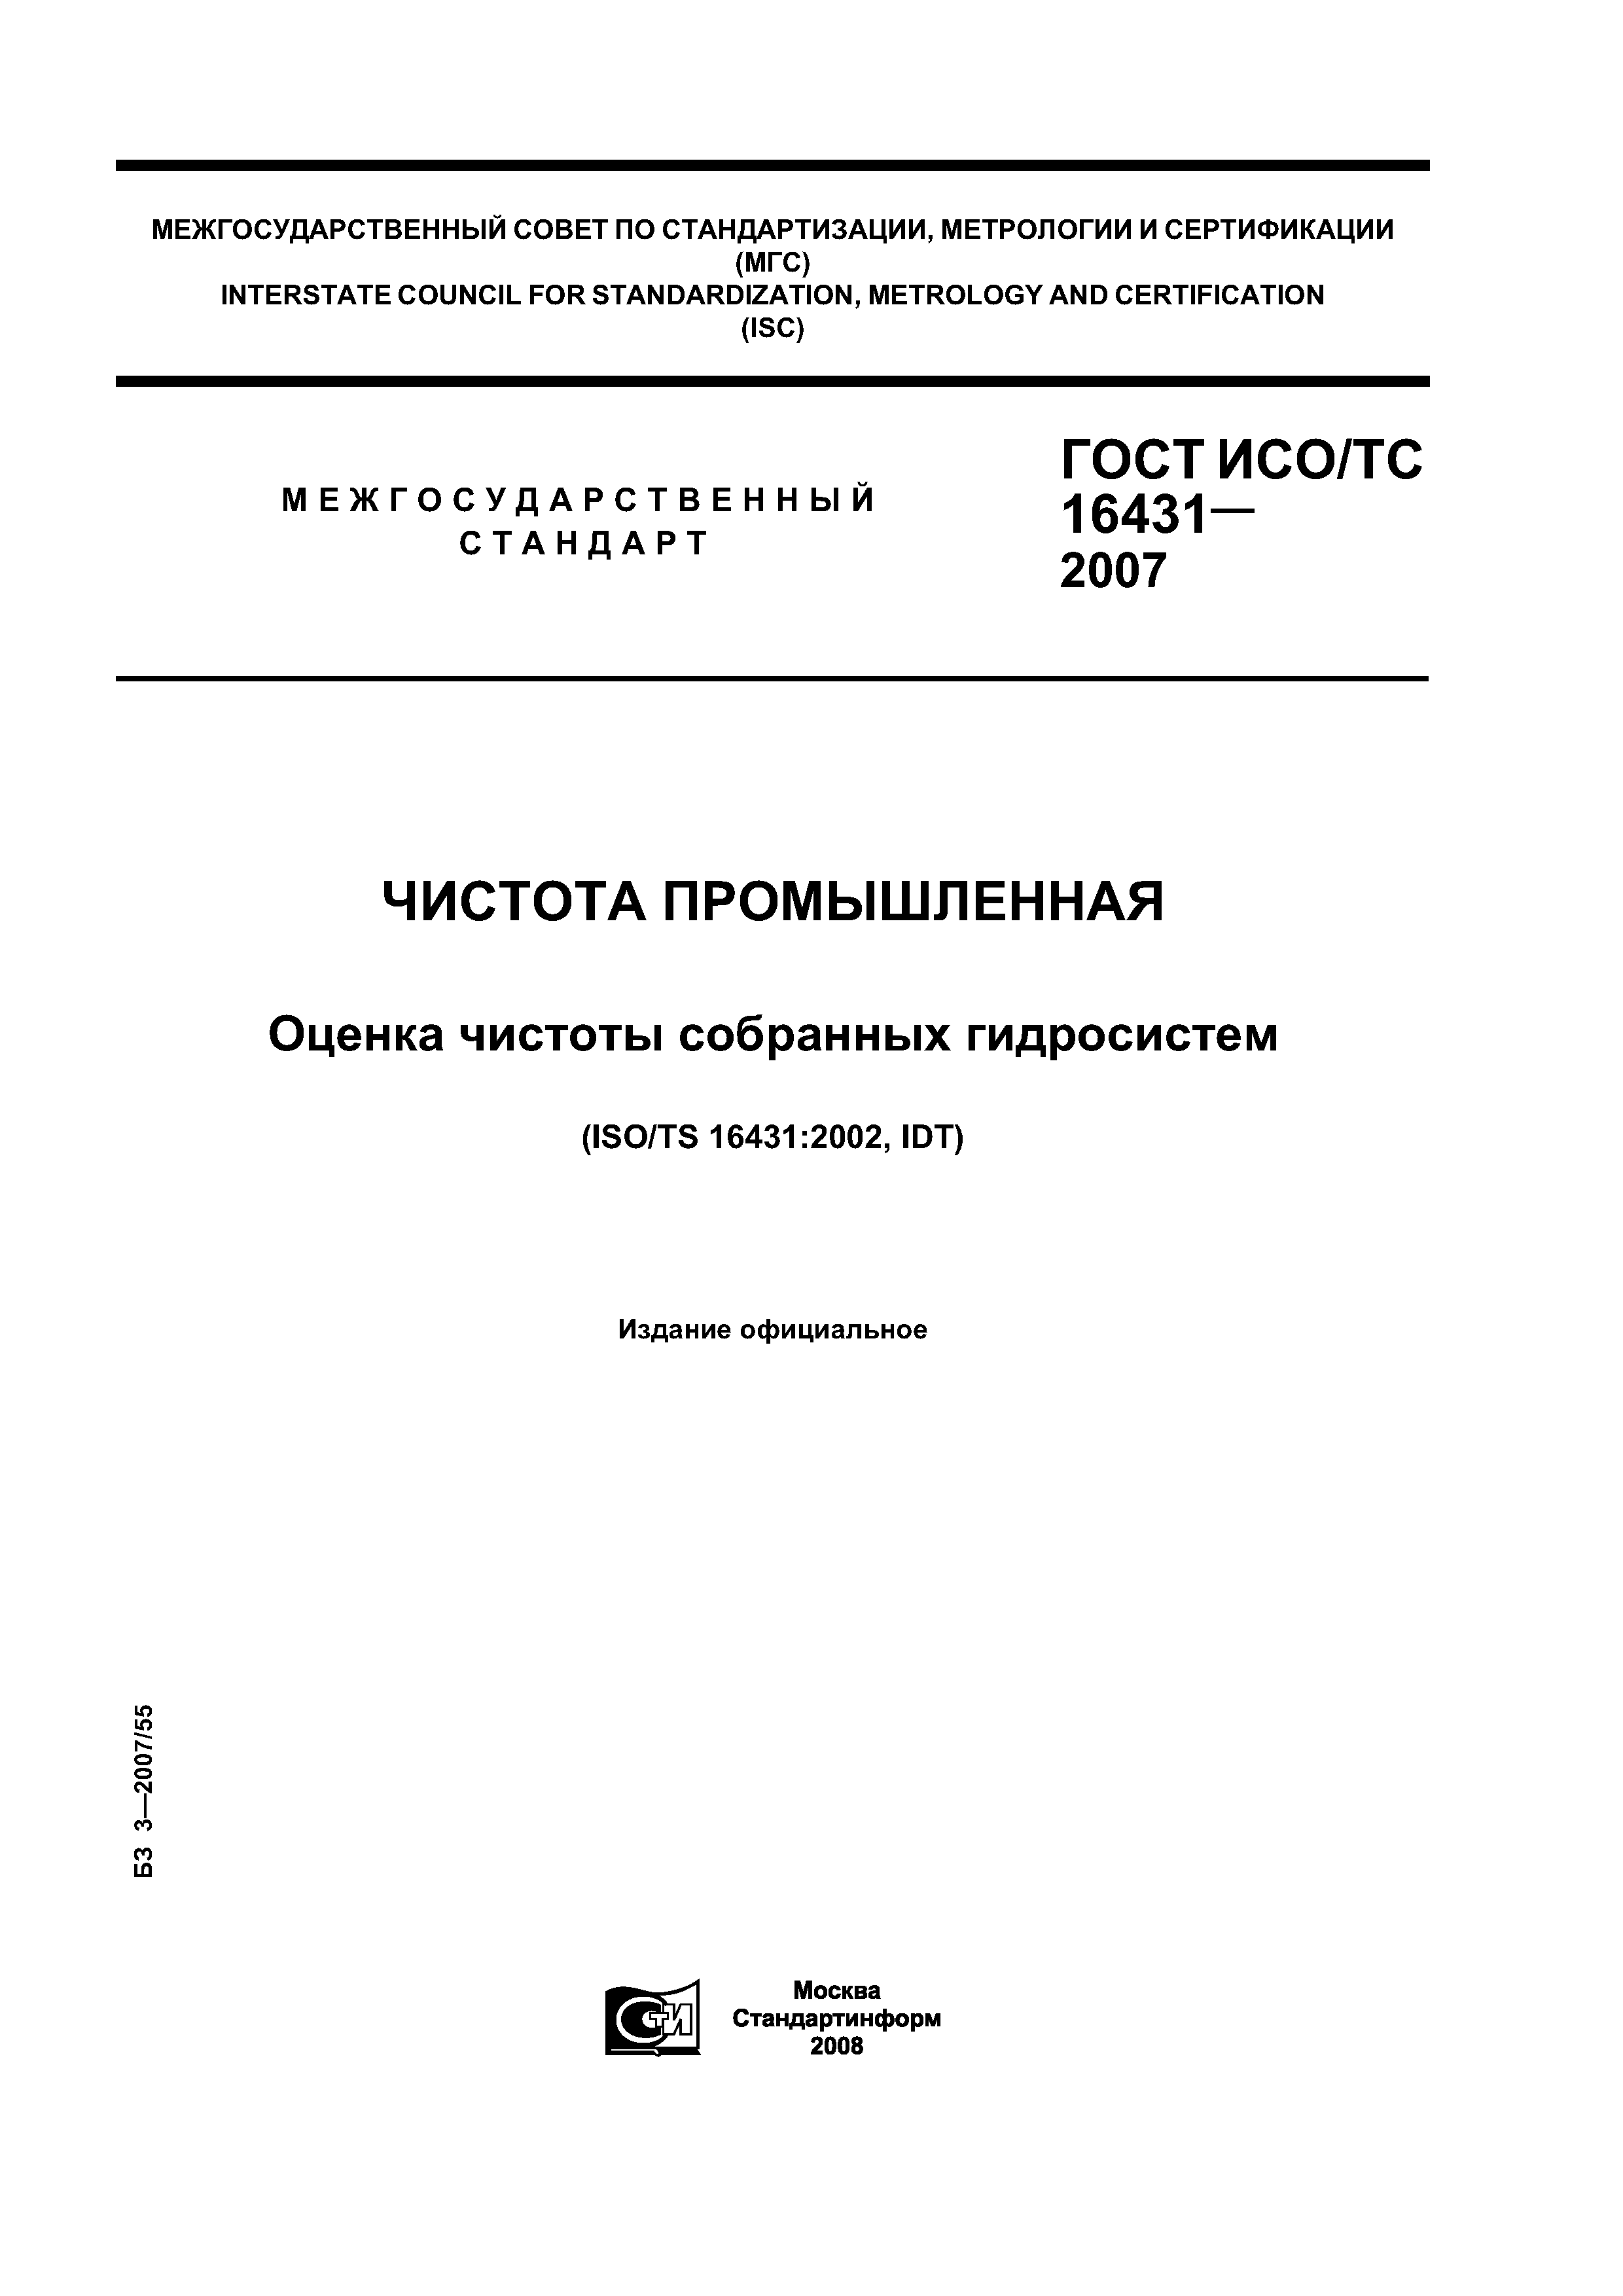 ГОСТ ИСО/ТС 16431-2007